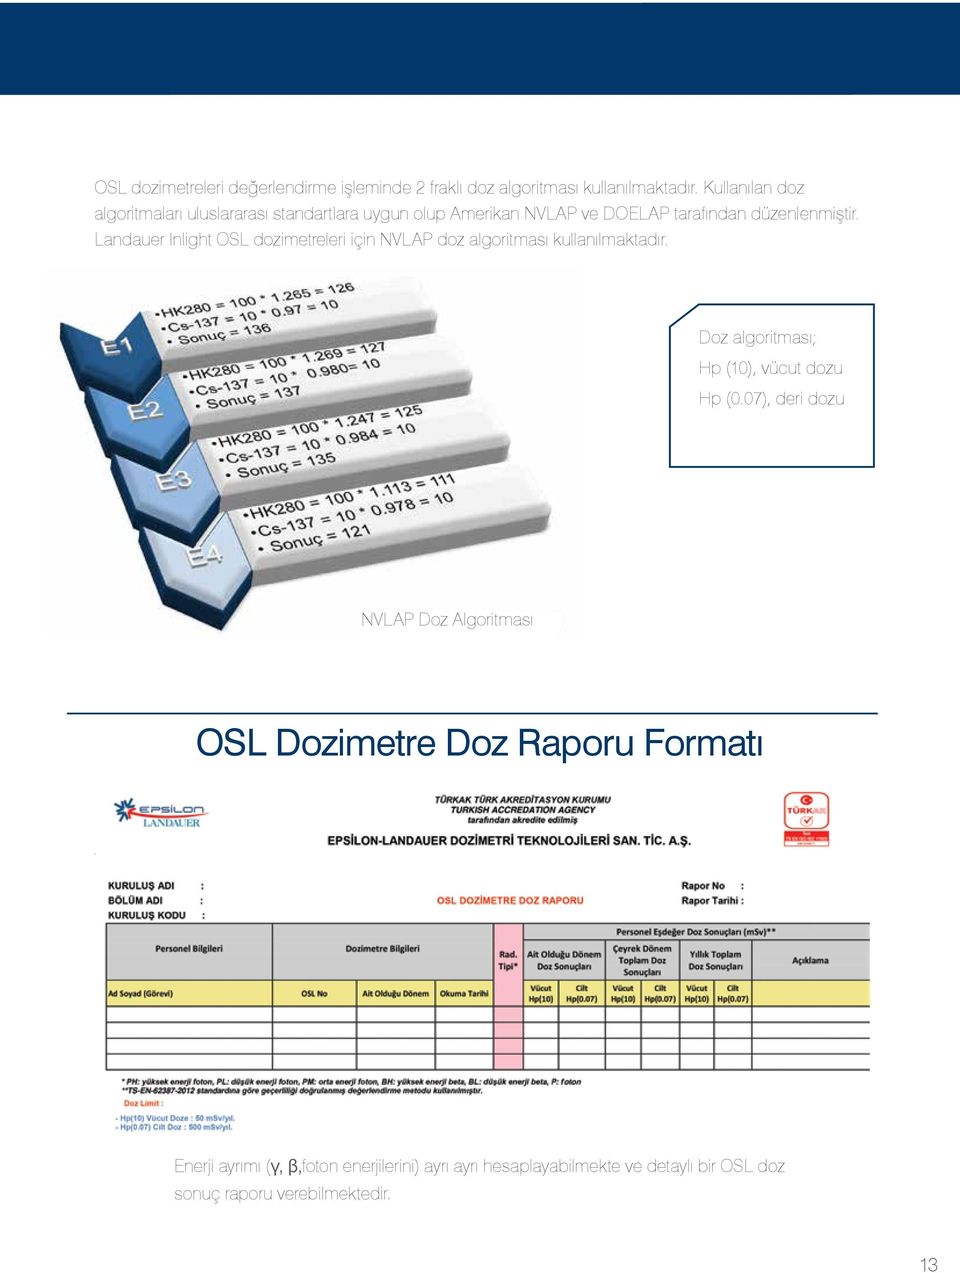 Landauer Inlight OSL dozimetreleri için NVLAP doz algoritması kullanılmaktadır. Doz algoritması; Hp (10), vücut dozu Hp (0.